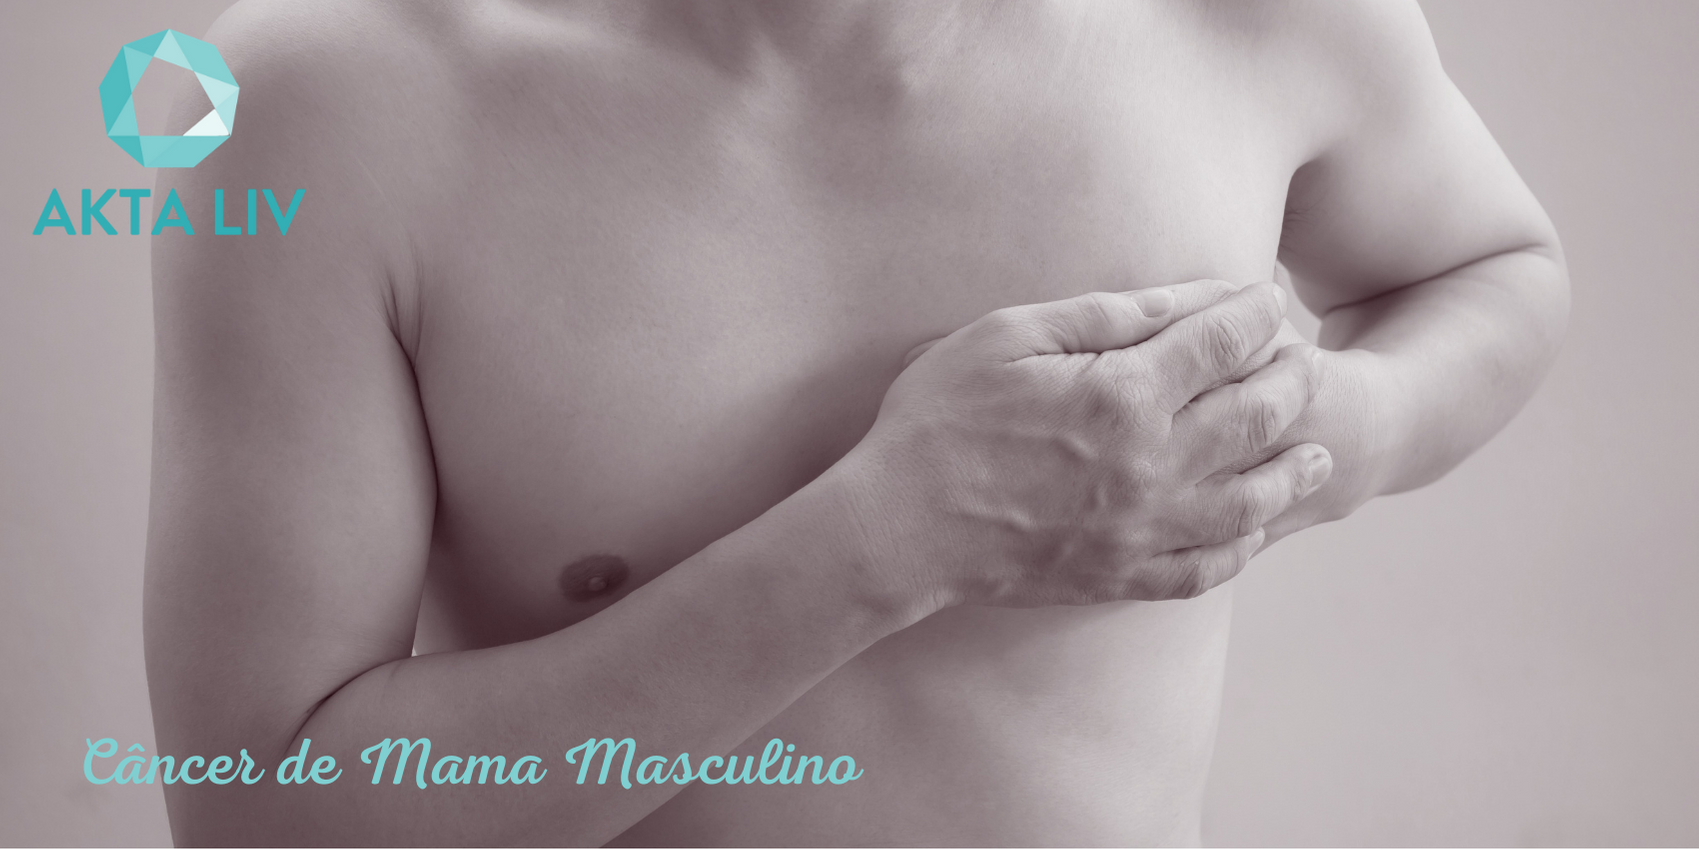 Mastologia - mastologista sao paulo - akta liv - cancer de mama em homens - cancer de mama masculino - conscientização - homem mão no peito